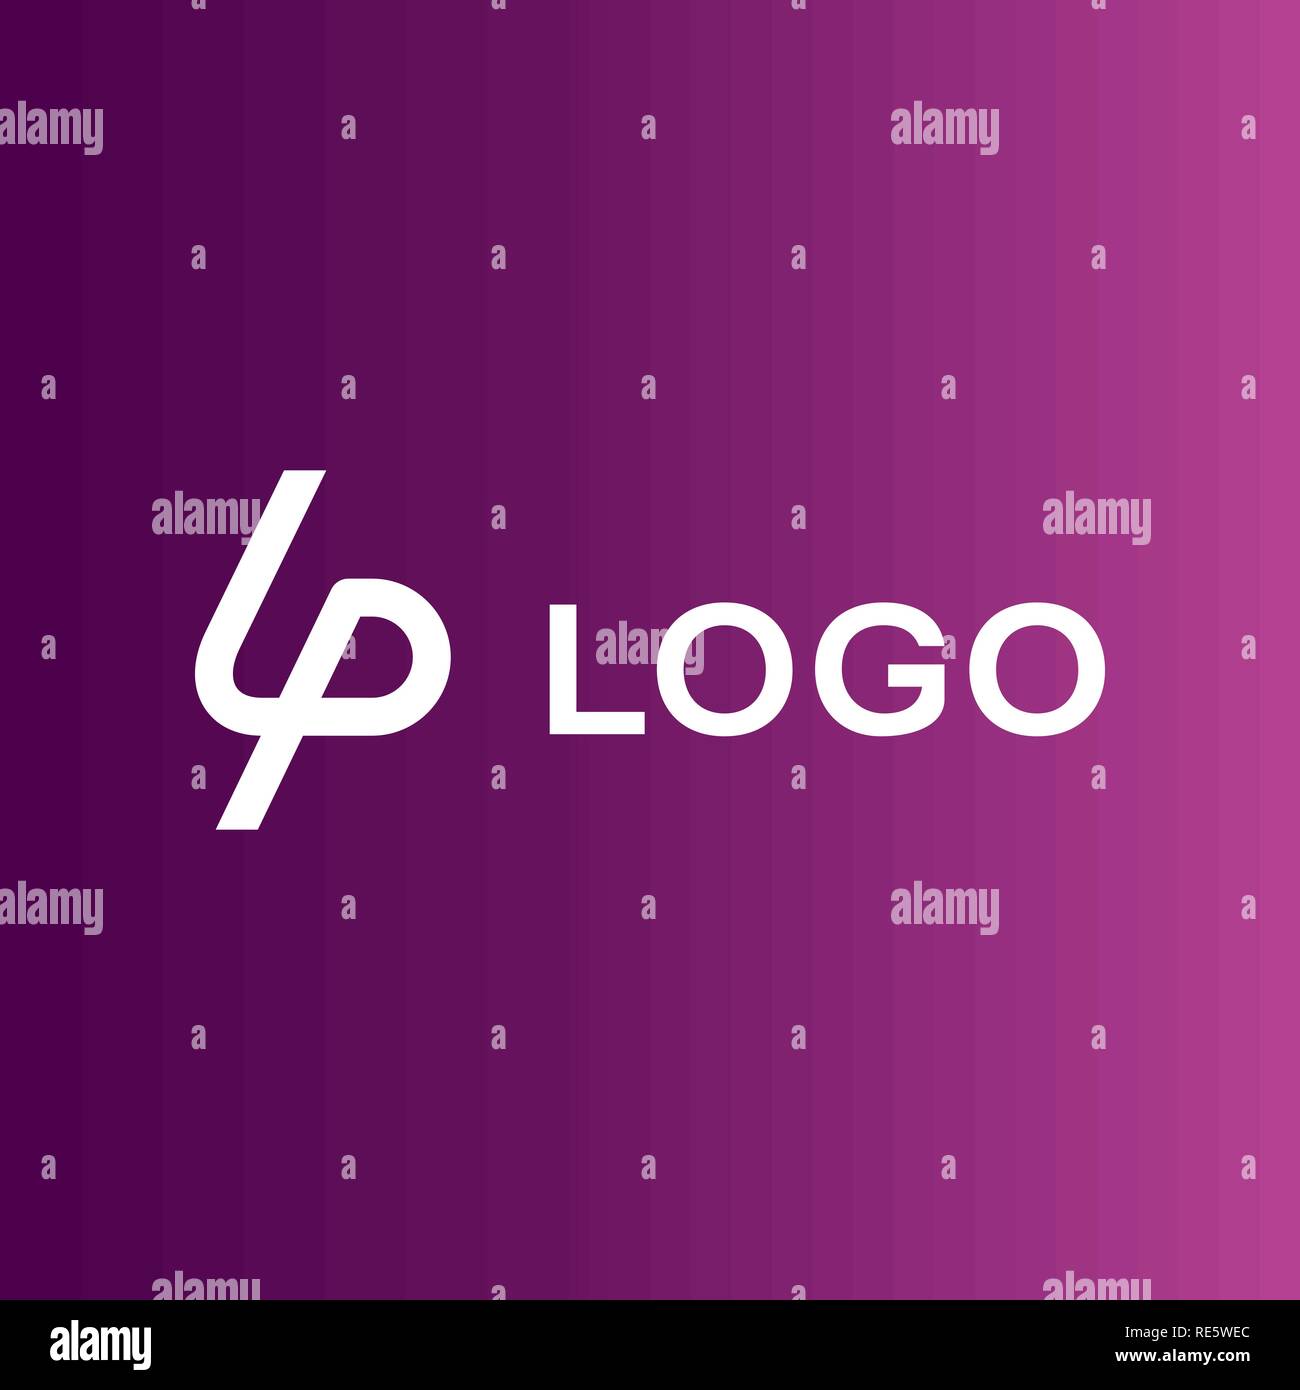 LP company logo vector template. Stock Vector